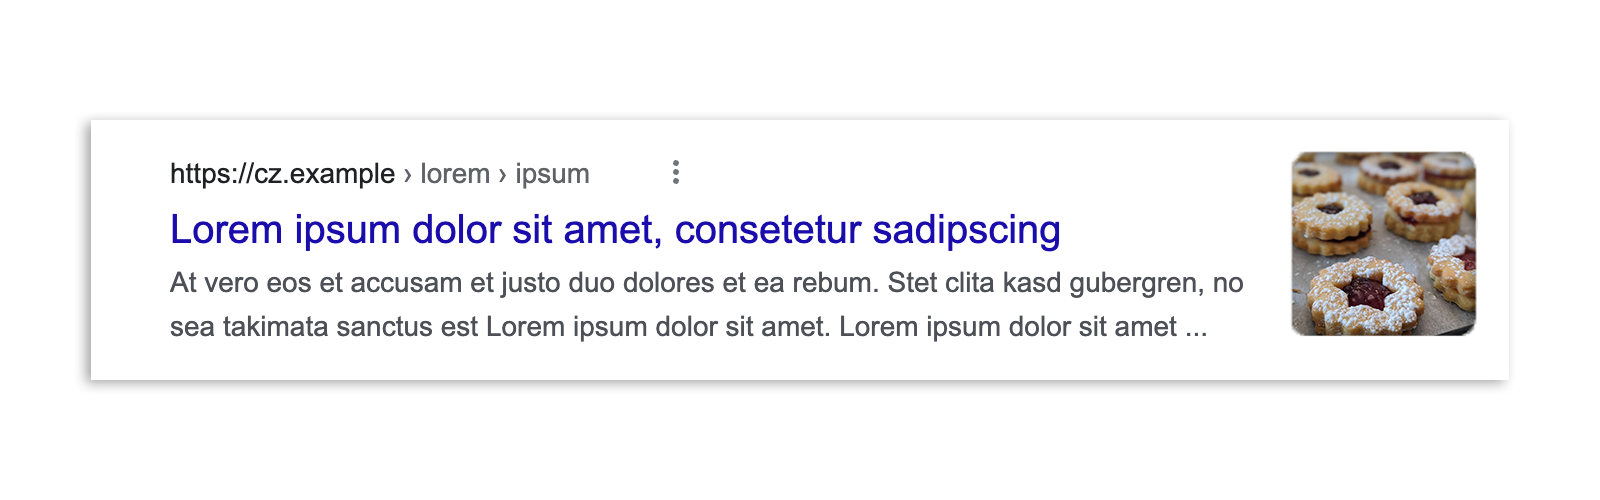 Um resultado da Pesquisa Google na República Tcheca antes da lei ser promulgada, mostrando um snippet do artigo, uma visualização de imagem, a manchete e o URL.